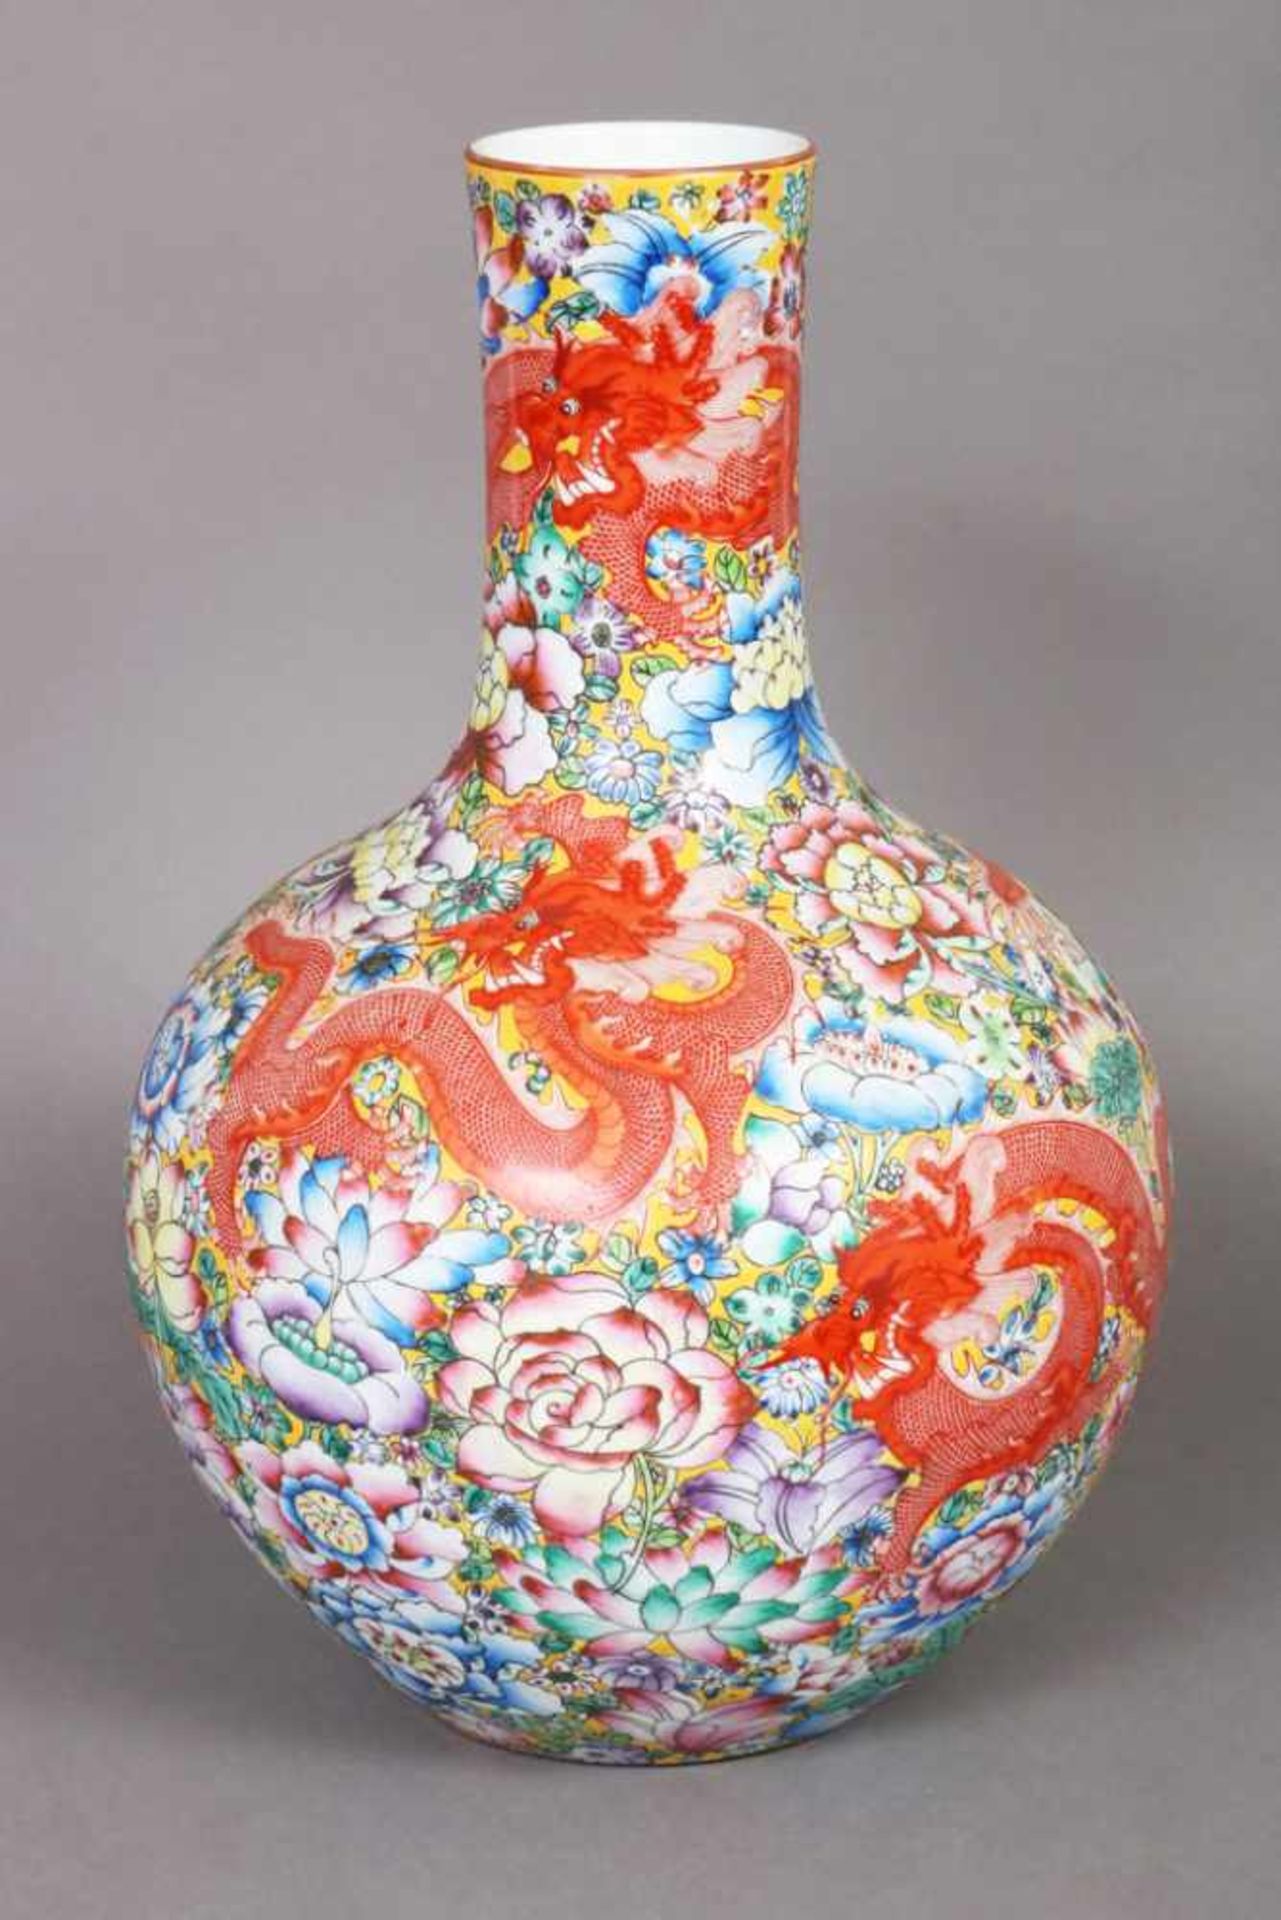 Chinesische Porzellanvase bauchige Knoblauchform mit zylindrischem Hals, Wandung mit üppigem,